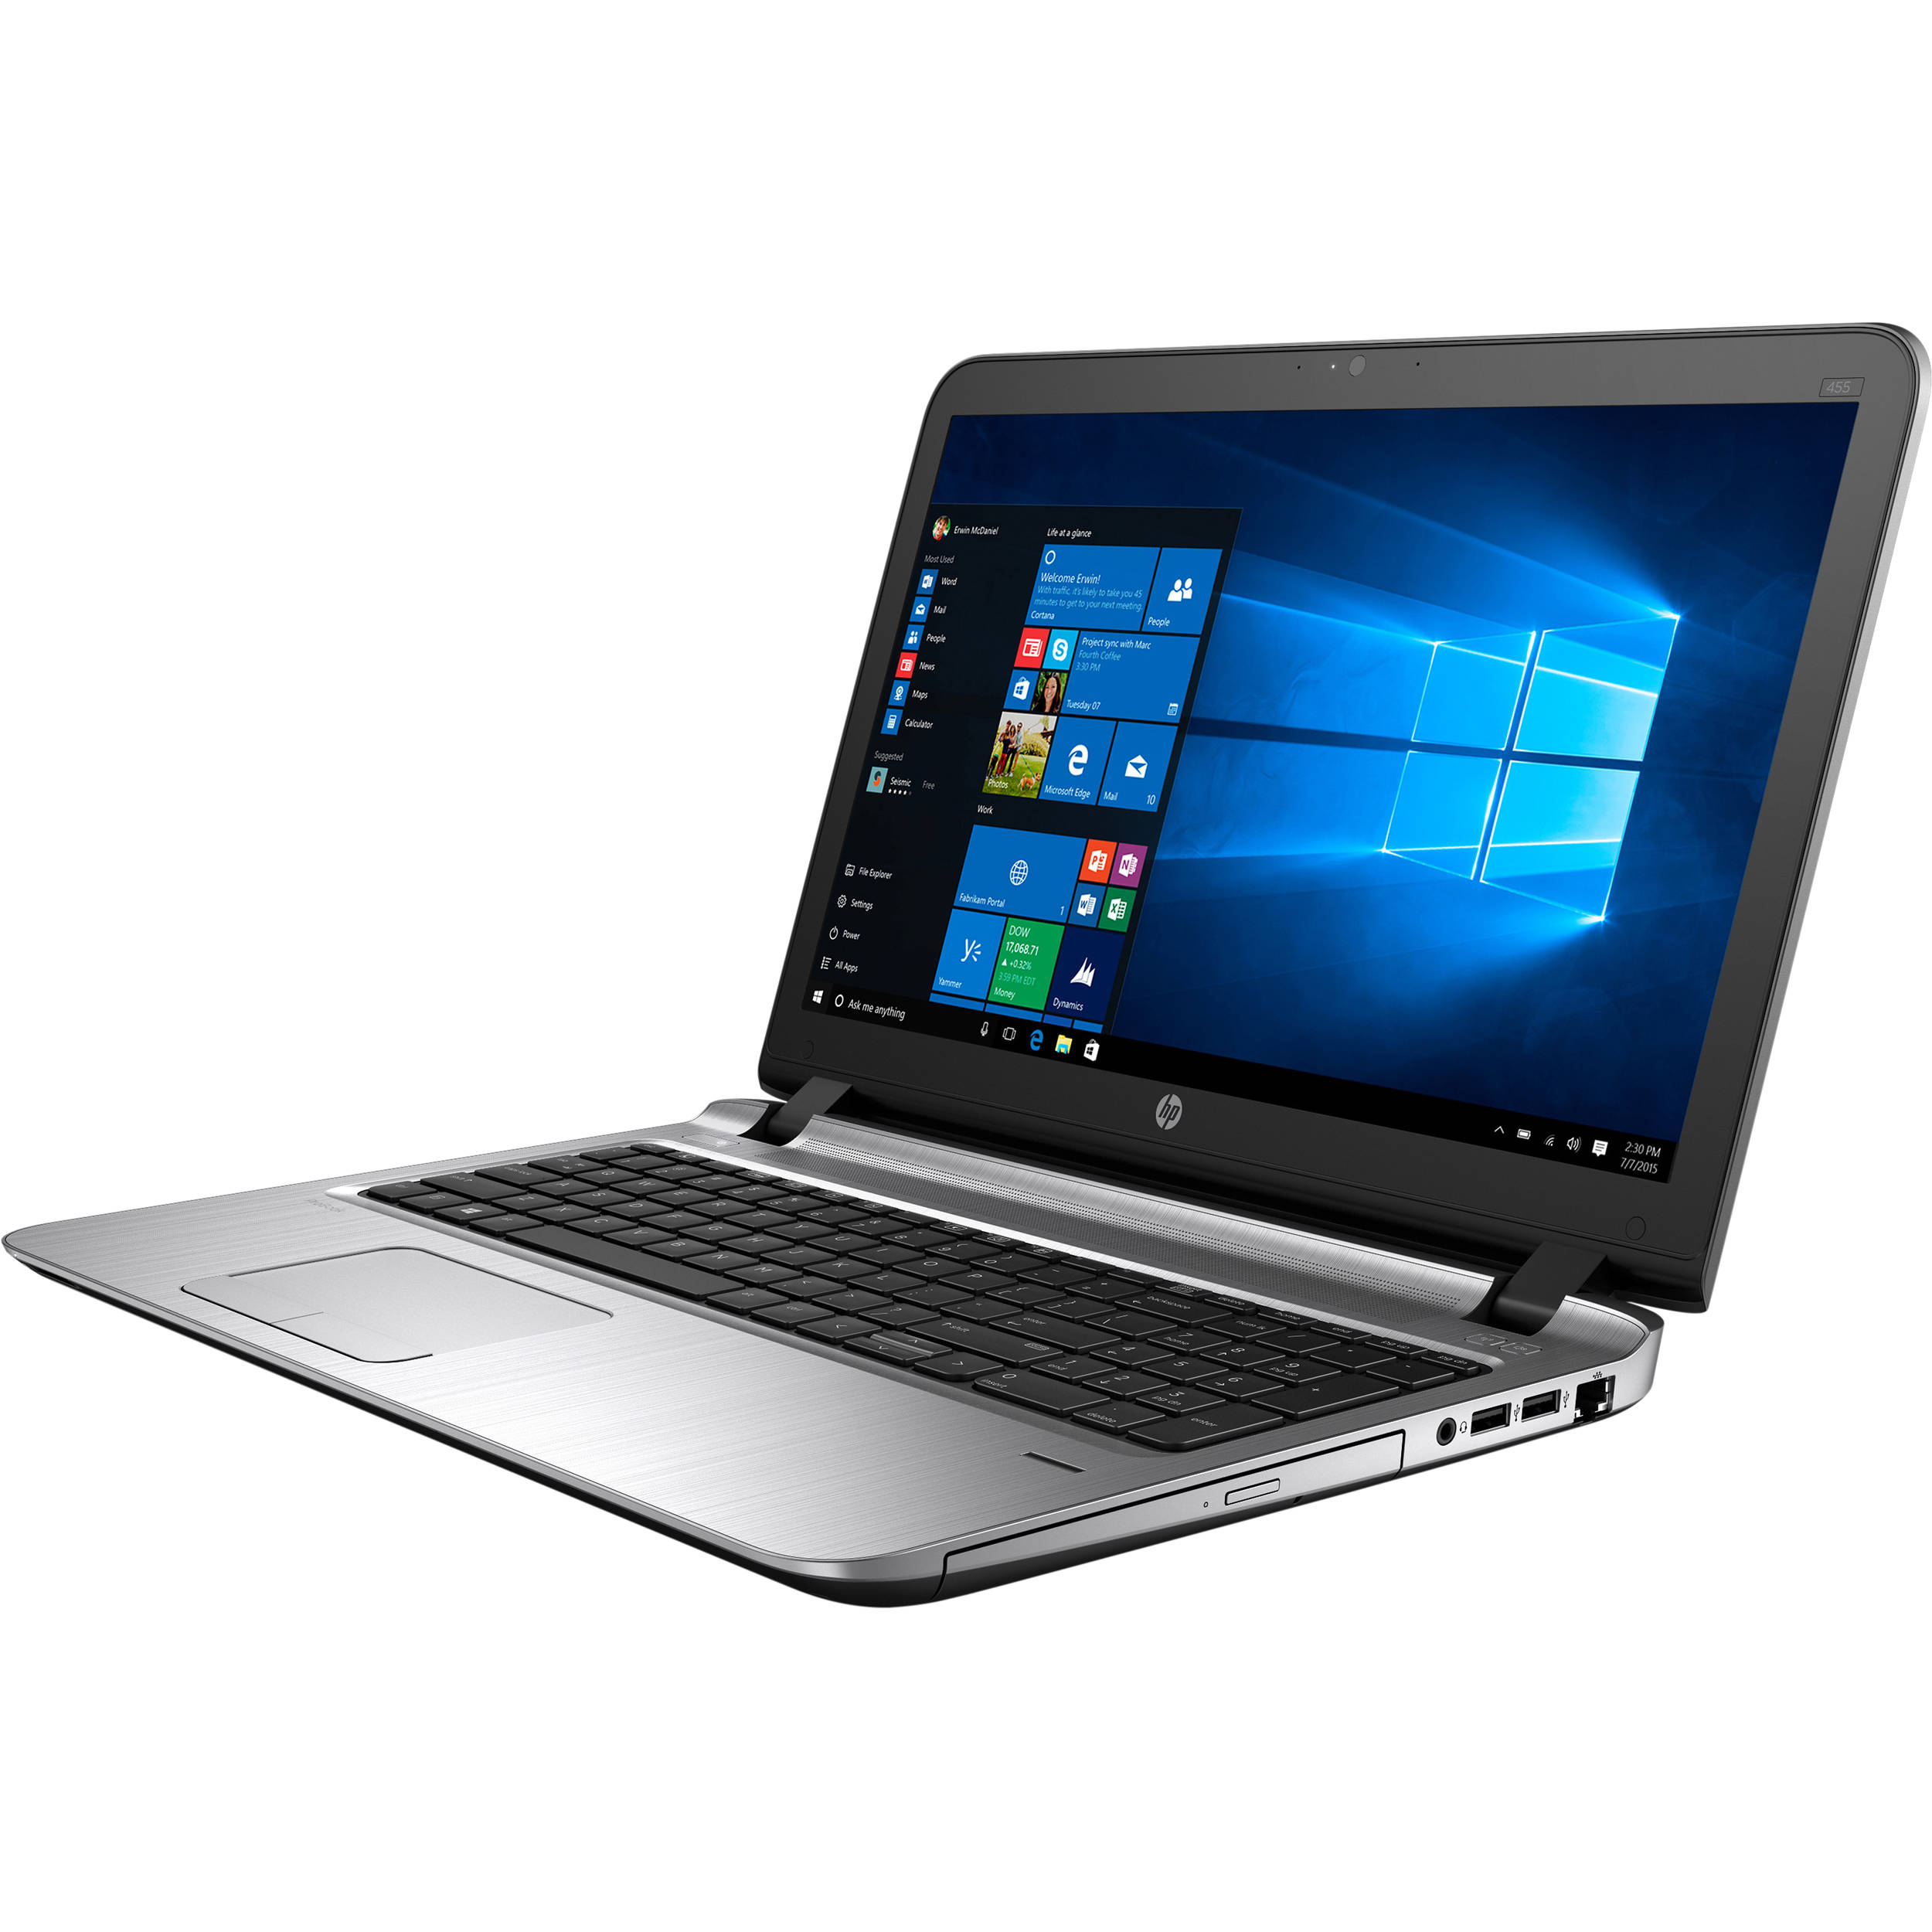 ProBook 450 G3 Notebook PC